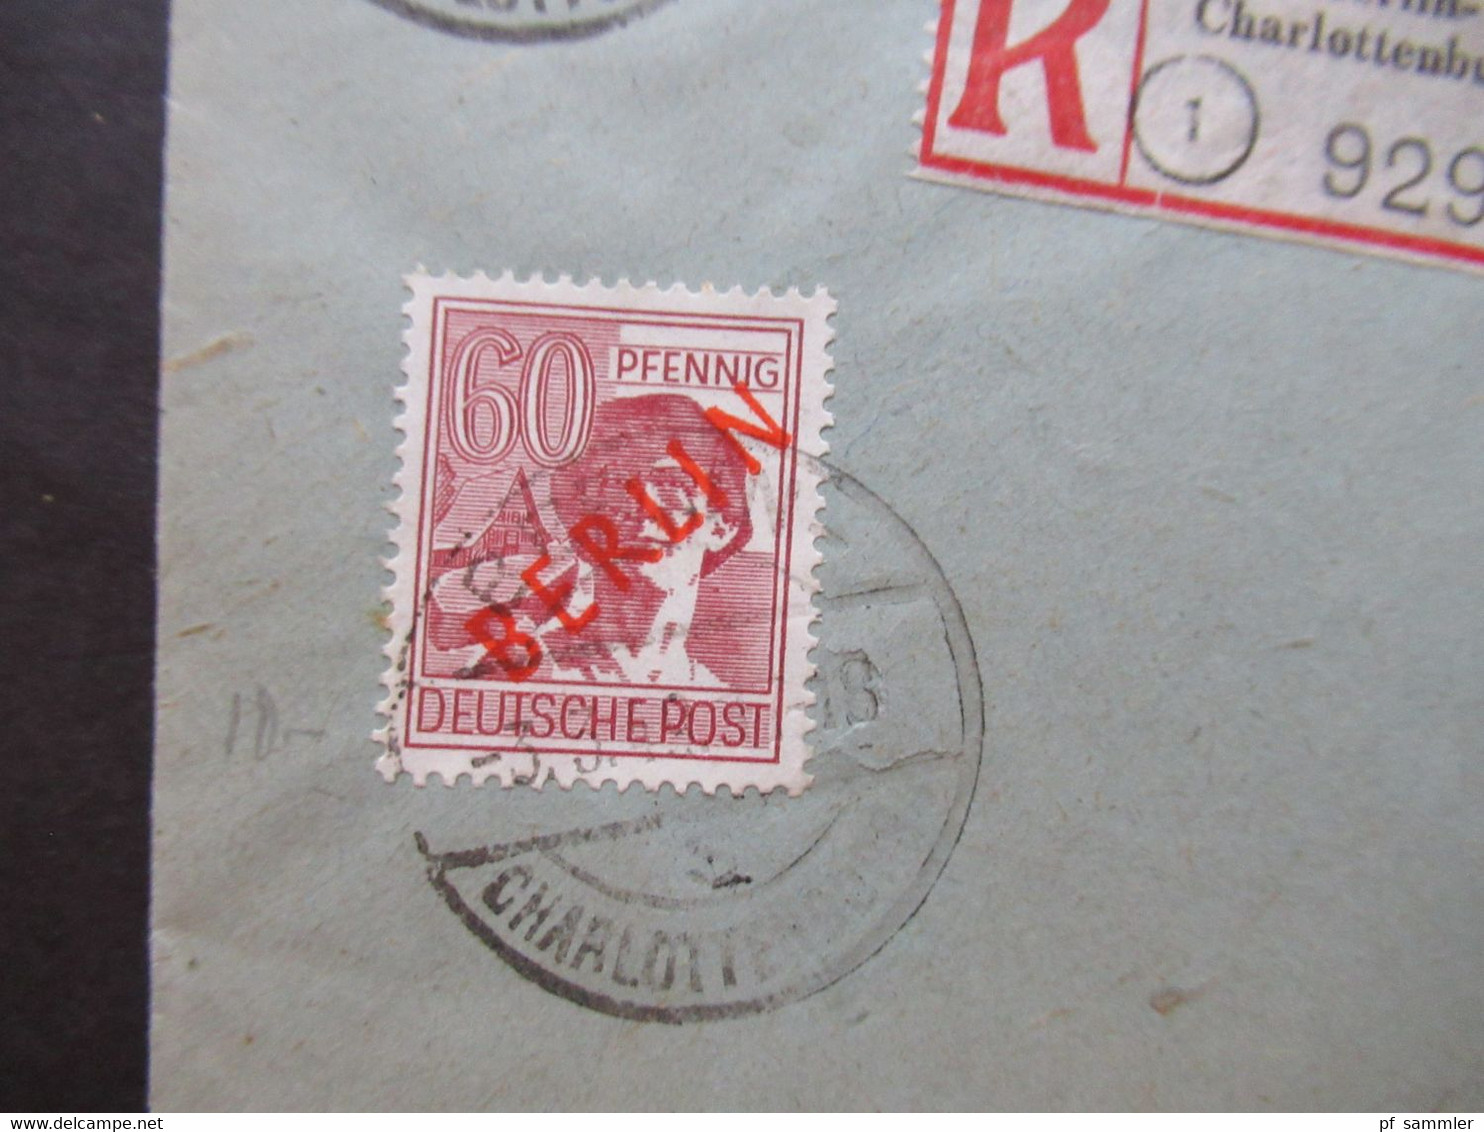 Berlin 1949 Rotaufdruck MiF mit 4 Marken u.A. Nr.25 Einschreiben Ortsbrief Berlin Charlottenburg 4 Briefmarkenhaus Bären